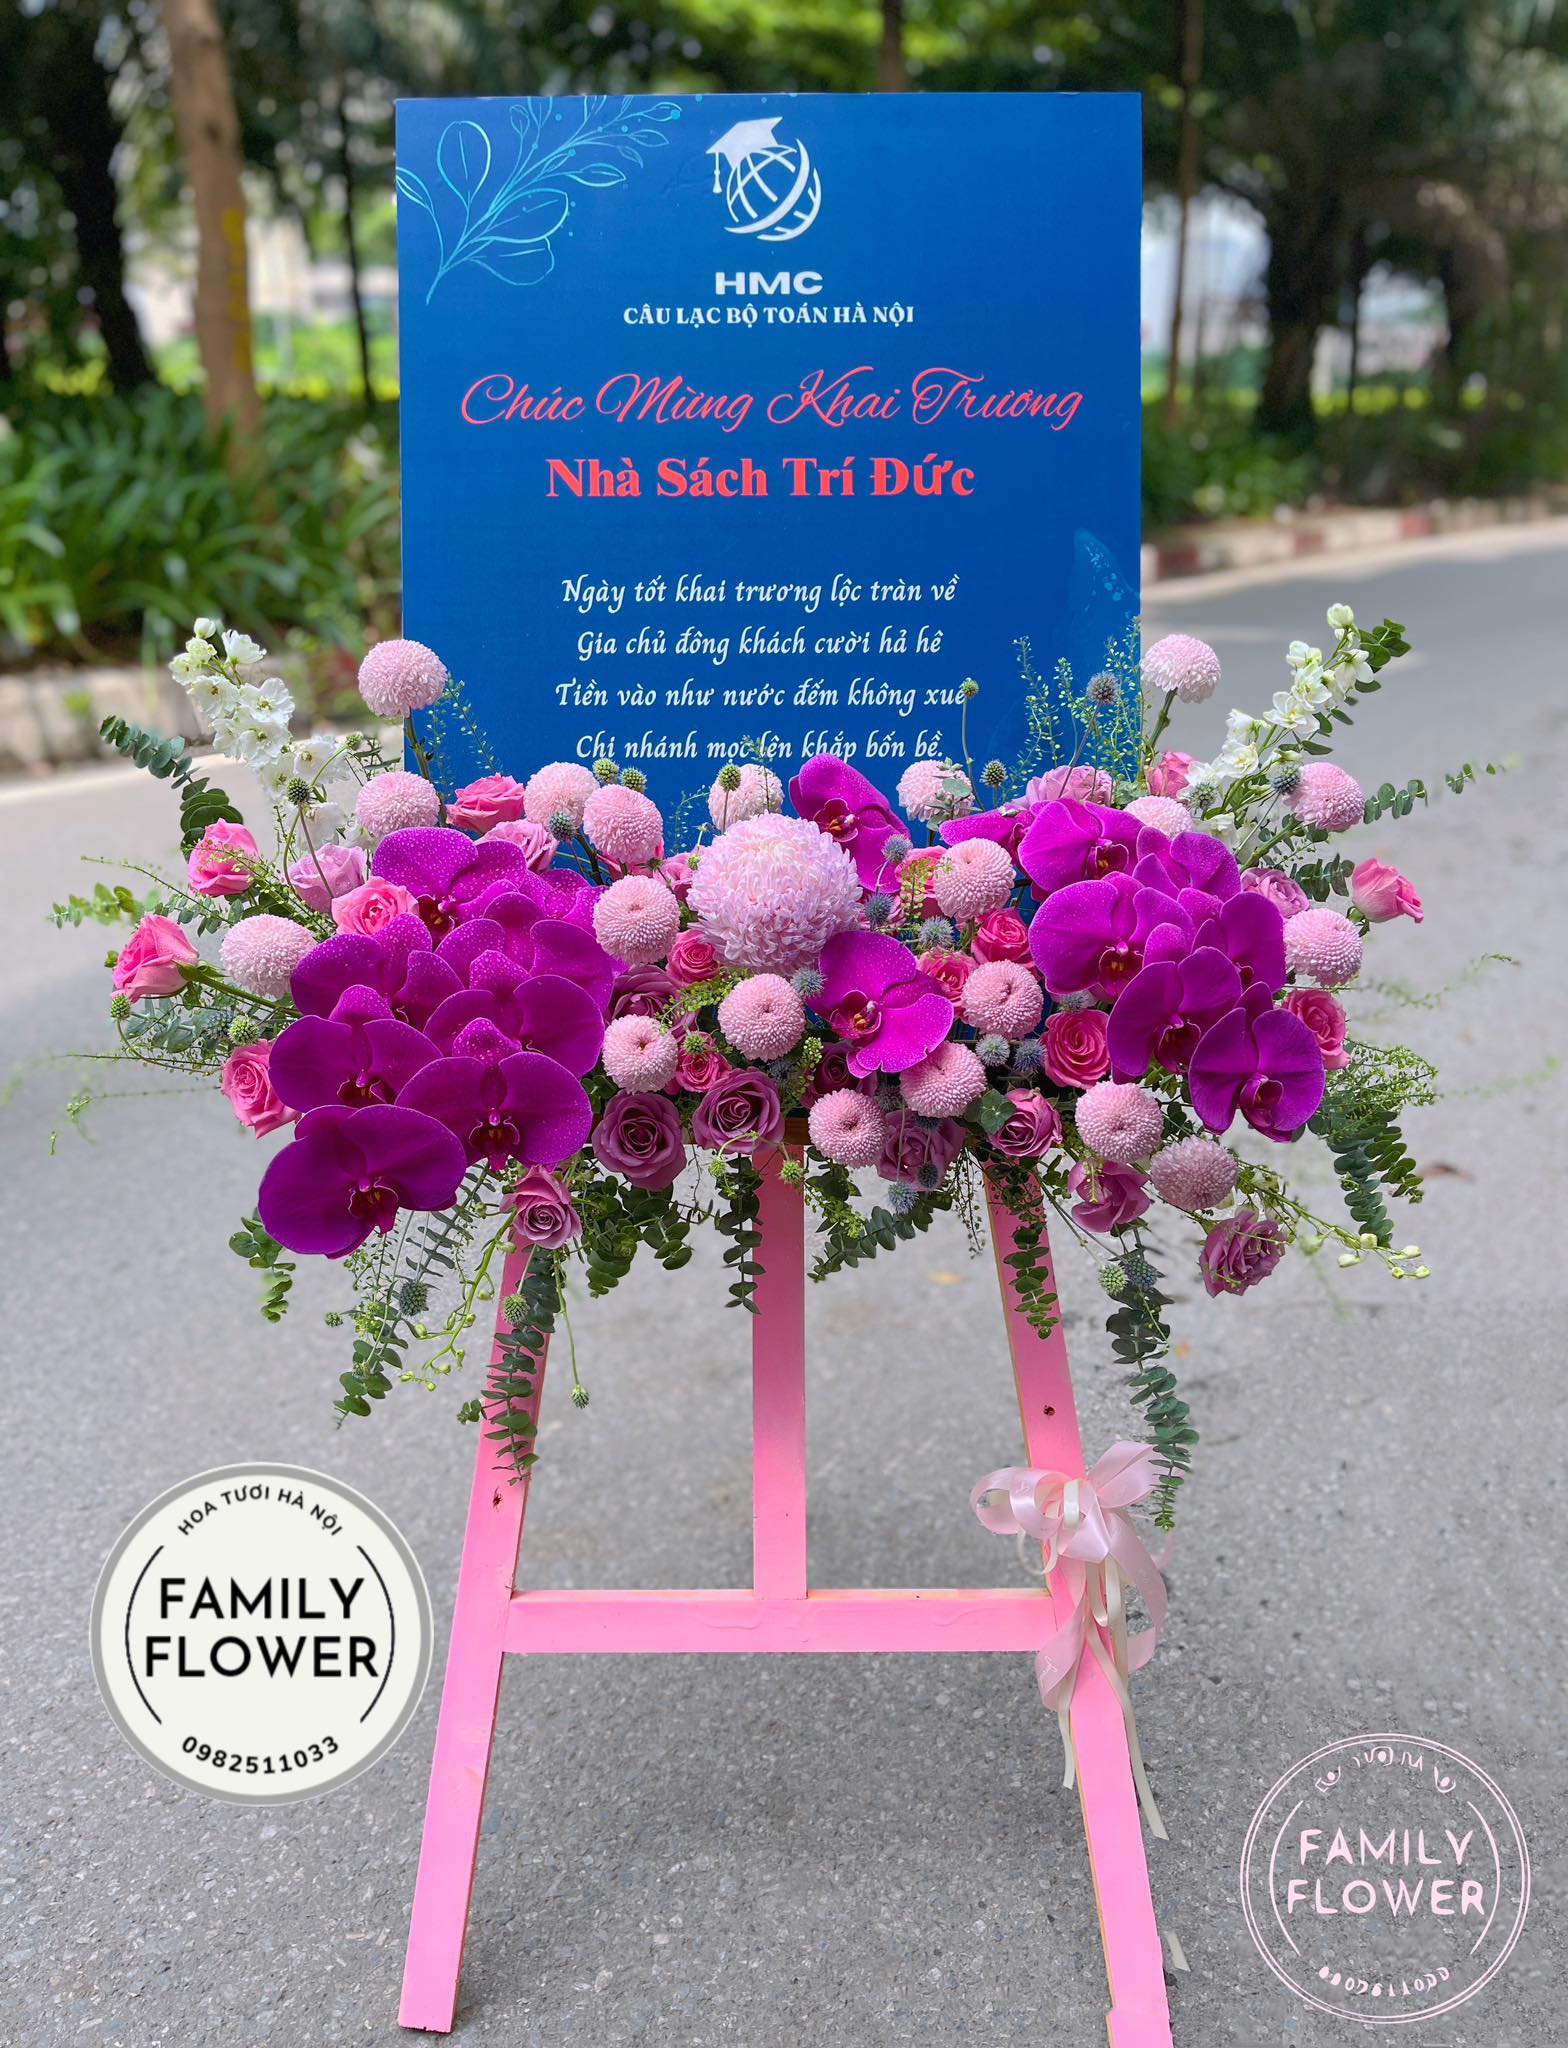 Kệ hoa khung tranh chúc mừng khai trương ở quận Cầu Giấy , Ba Đình Hà Nội ! , hoa tươi Hà Nội